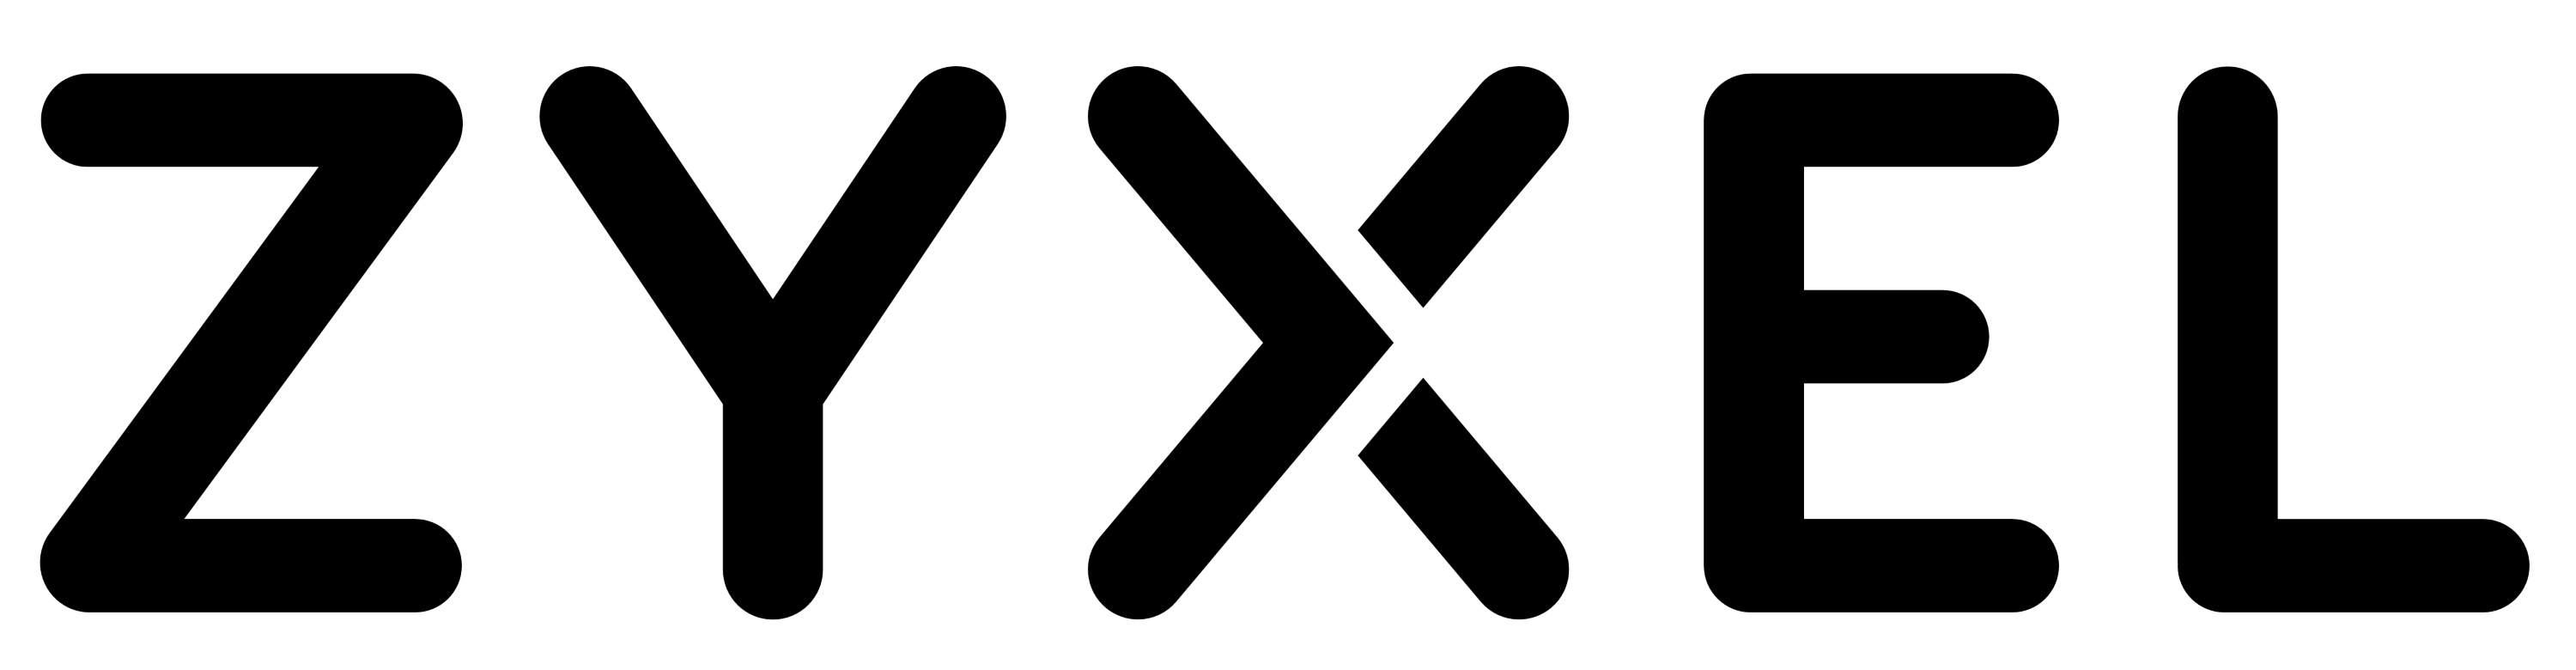 Zyxel logo, logotype